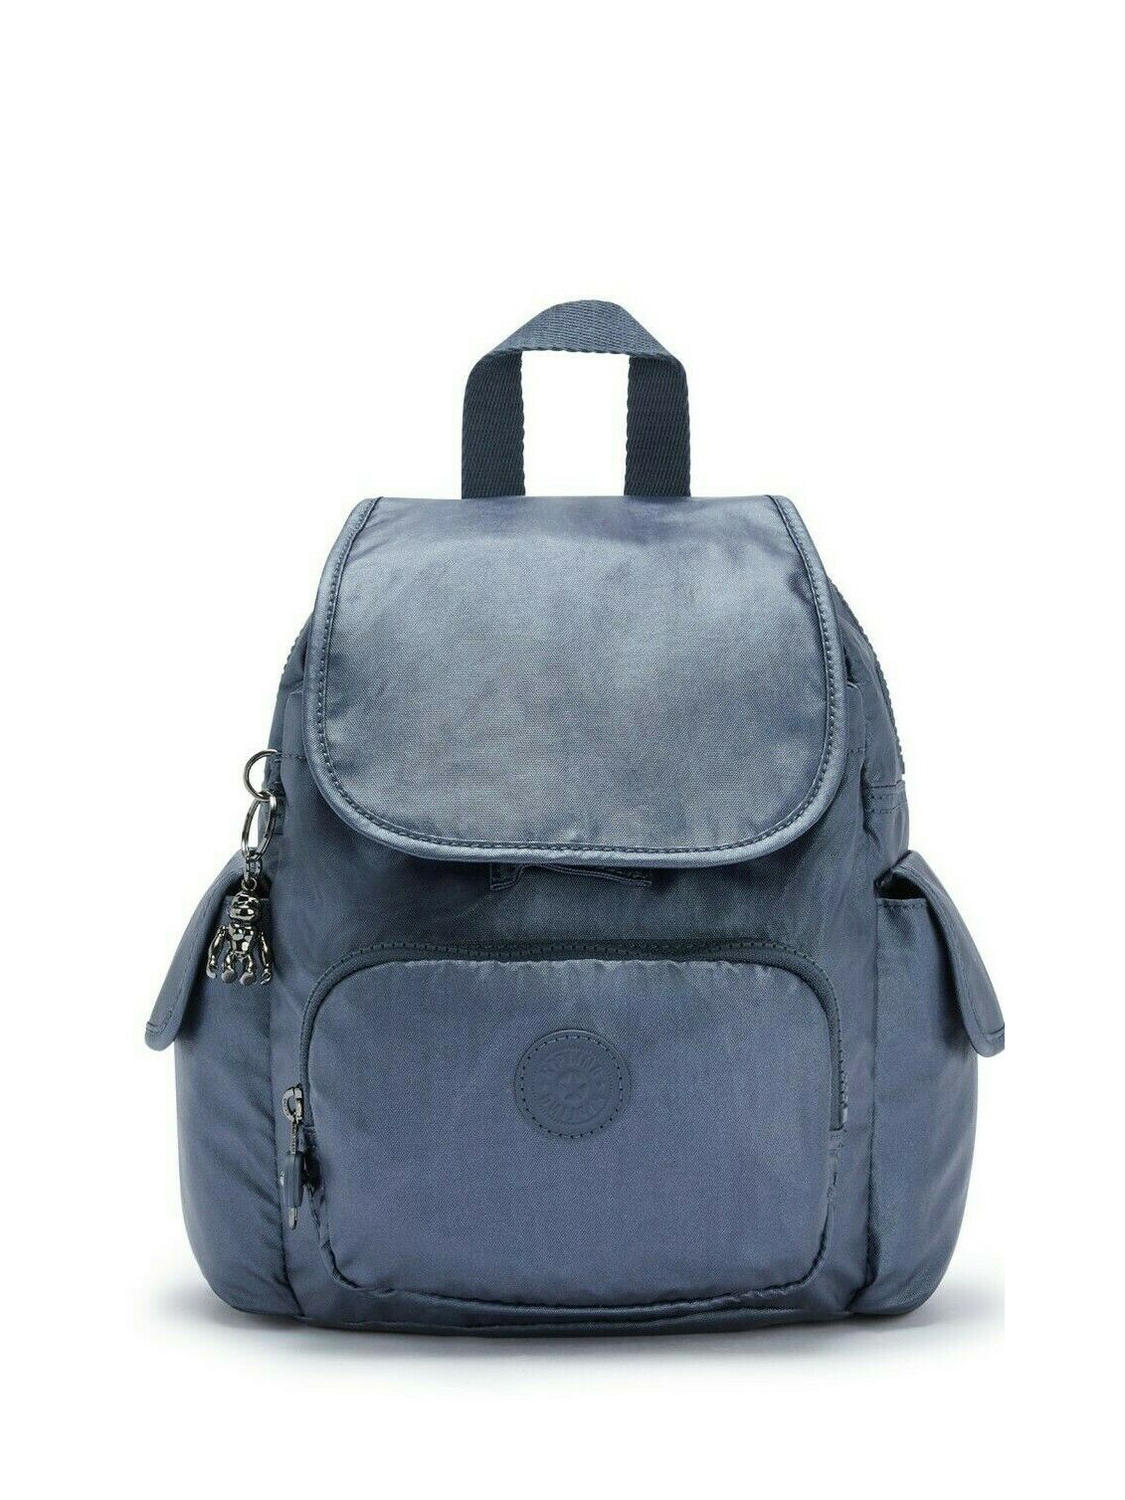 Kipling City Pack Mini Shoulder Backpack Midnight Frost - Buy At Outlet ...